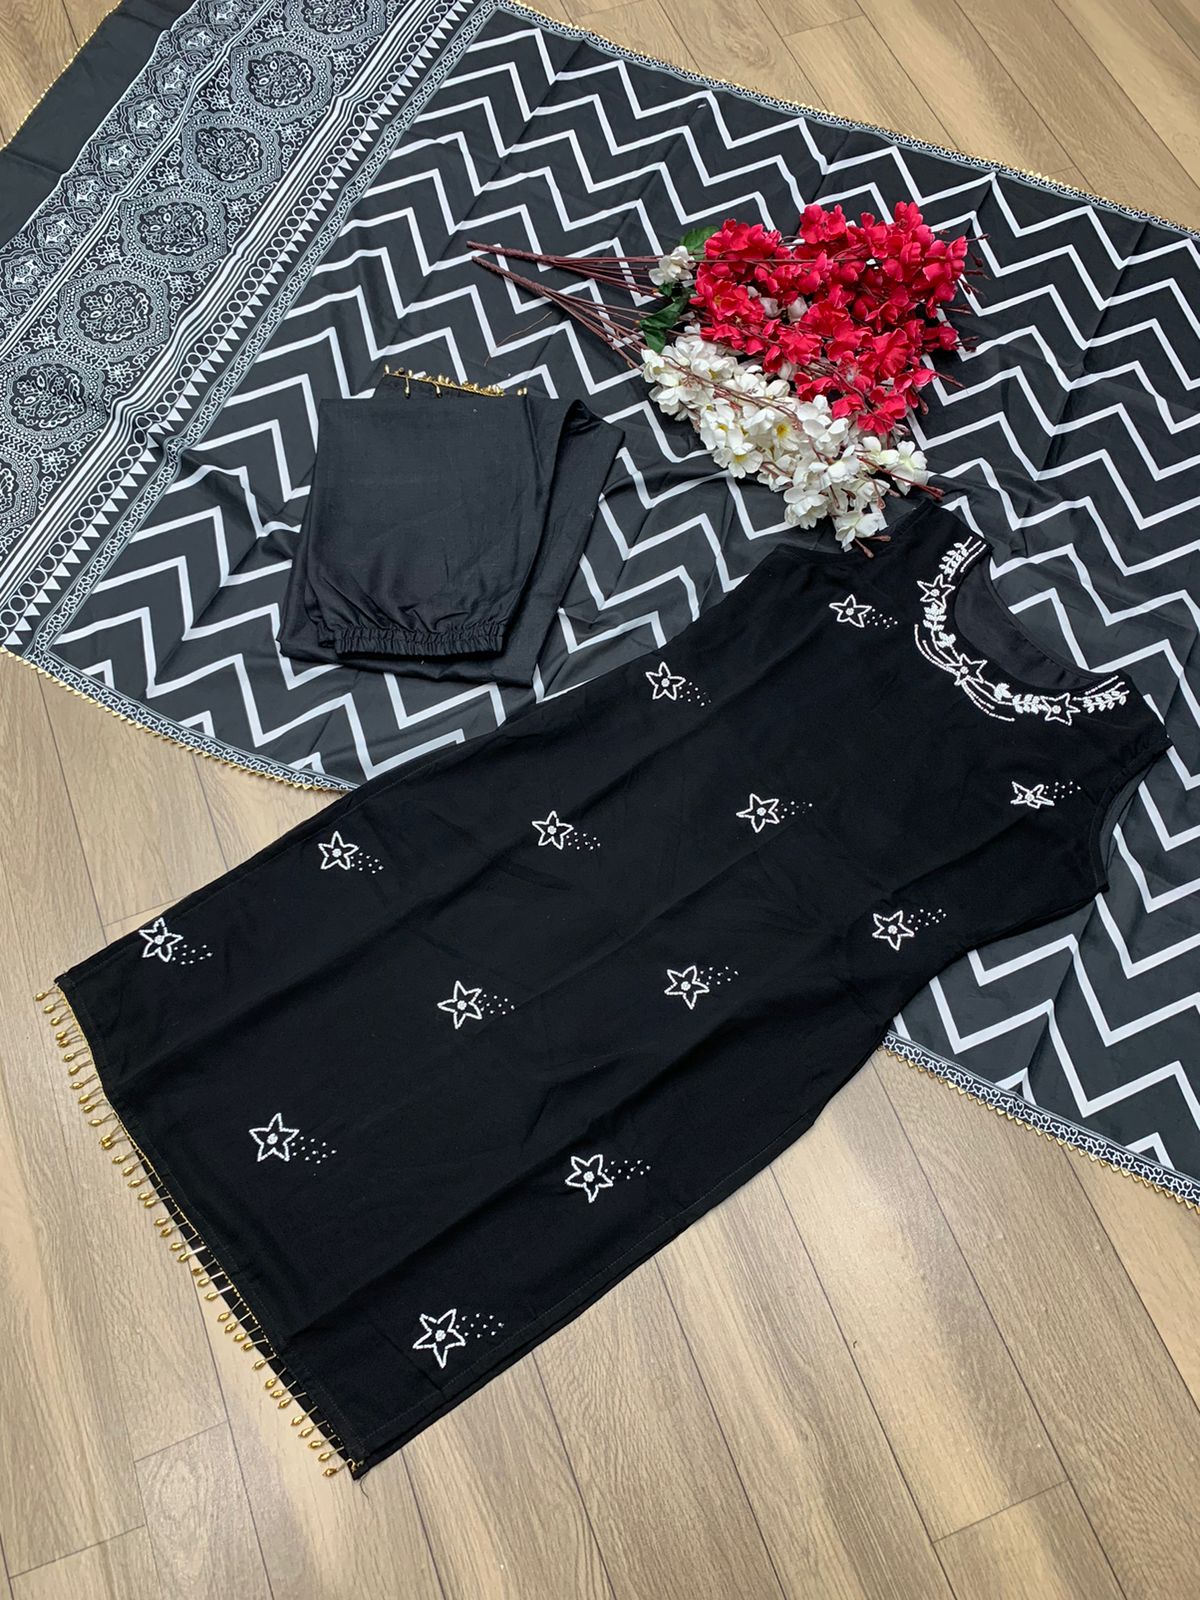 Fully Stitched Black Color Fantastic Salawar Suit